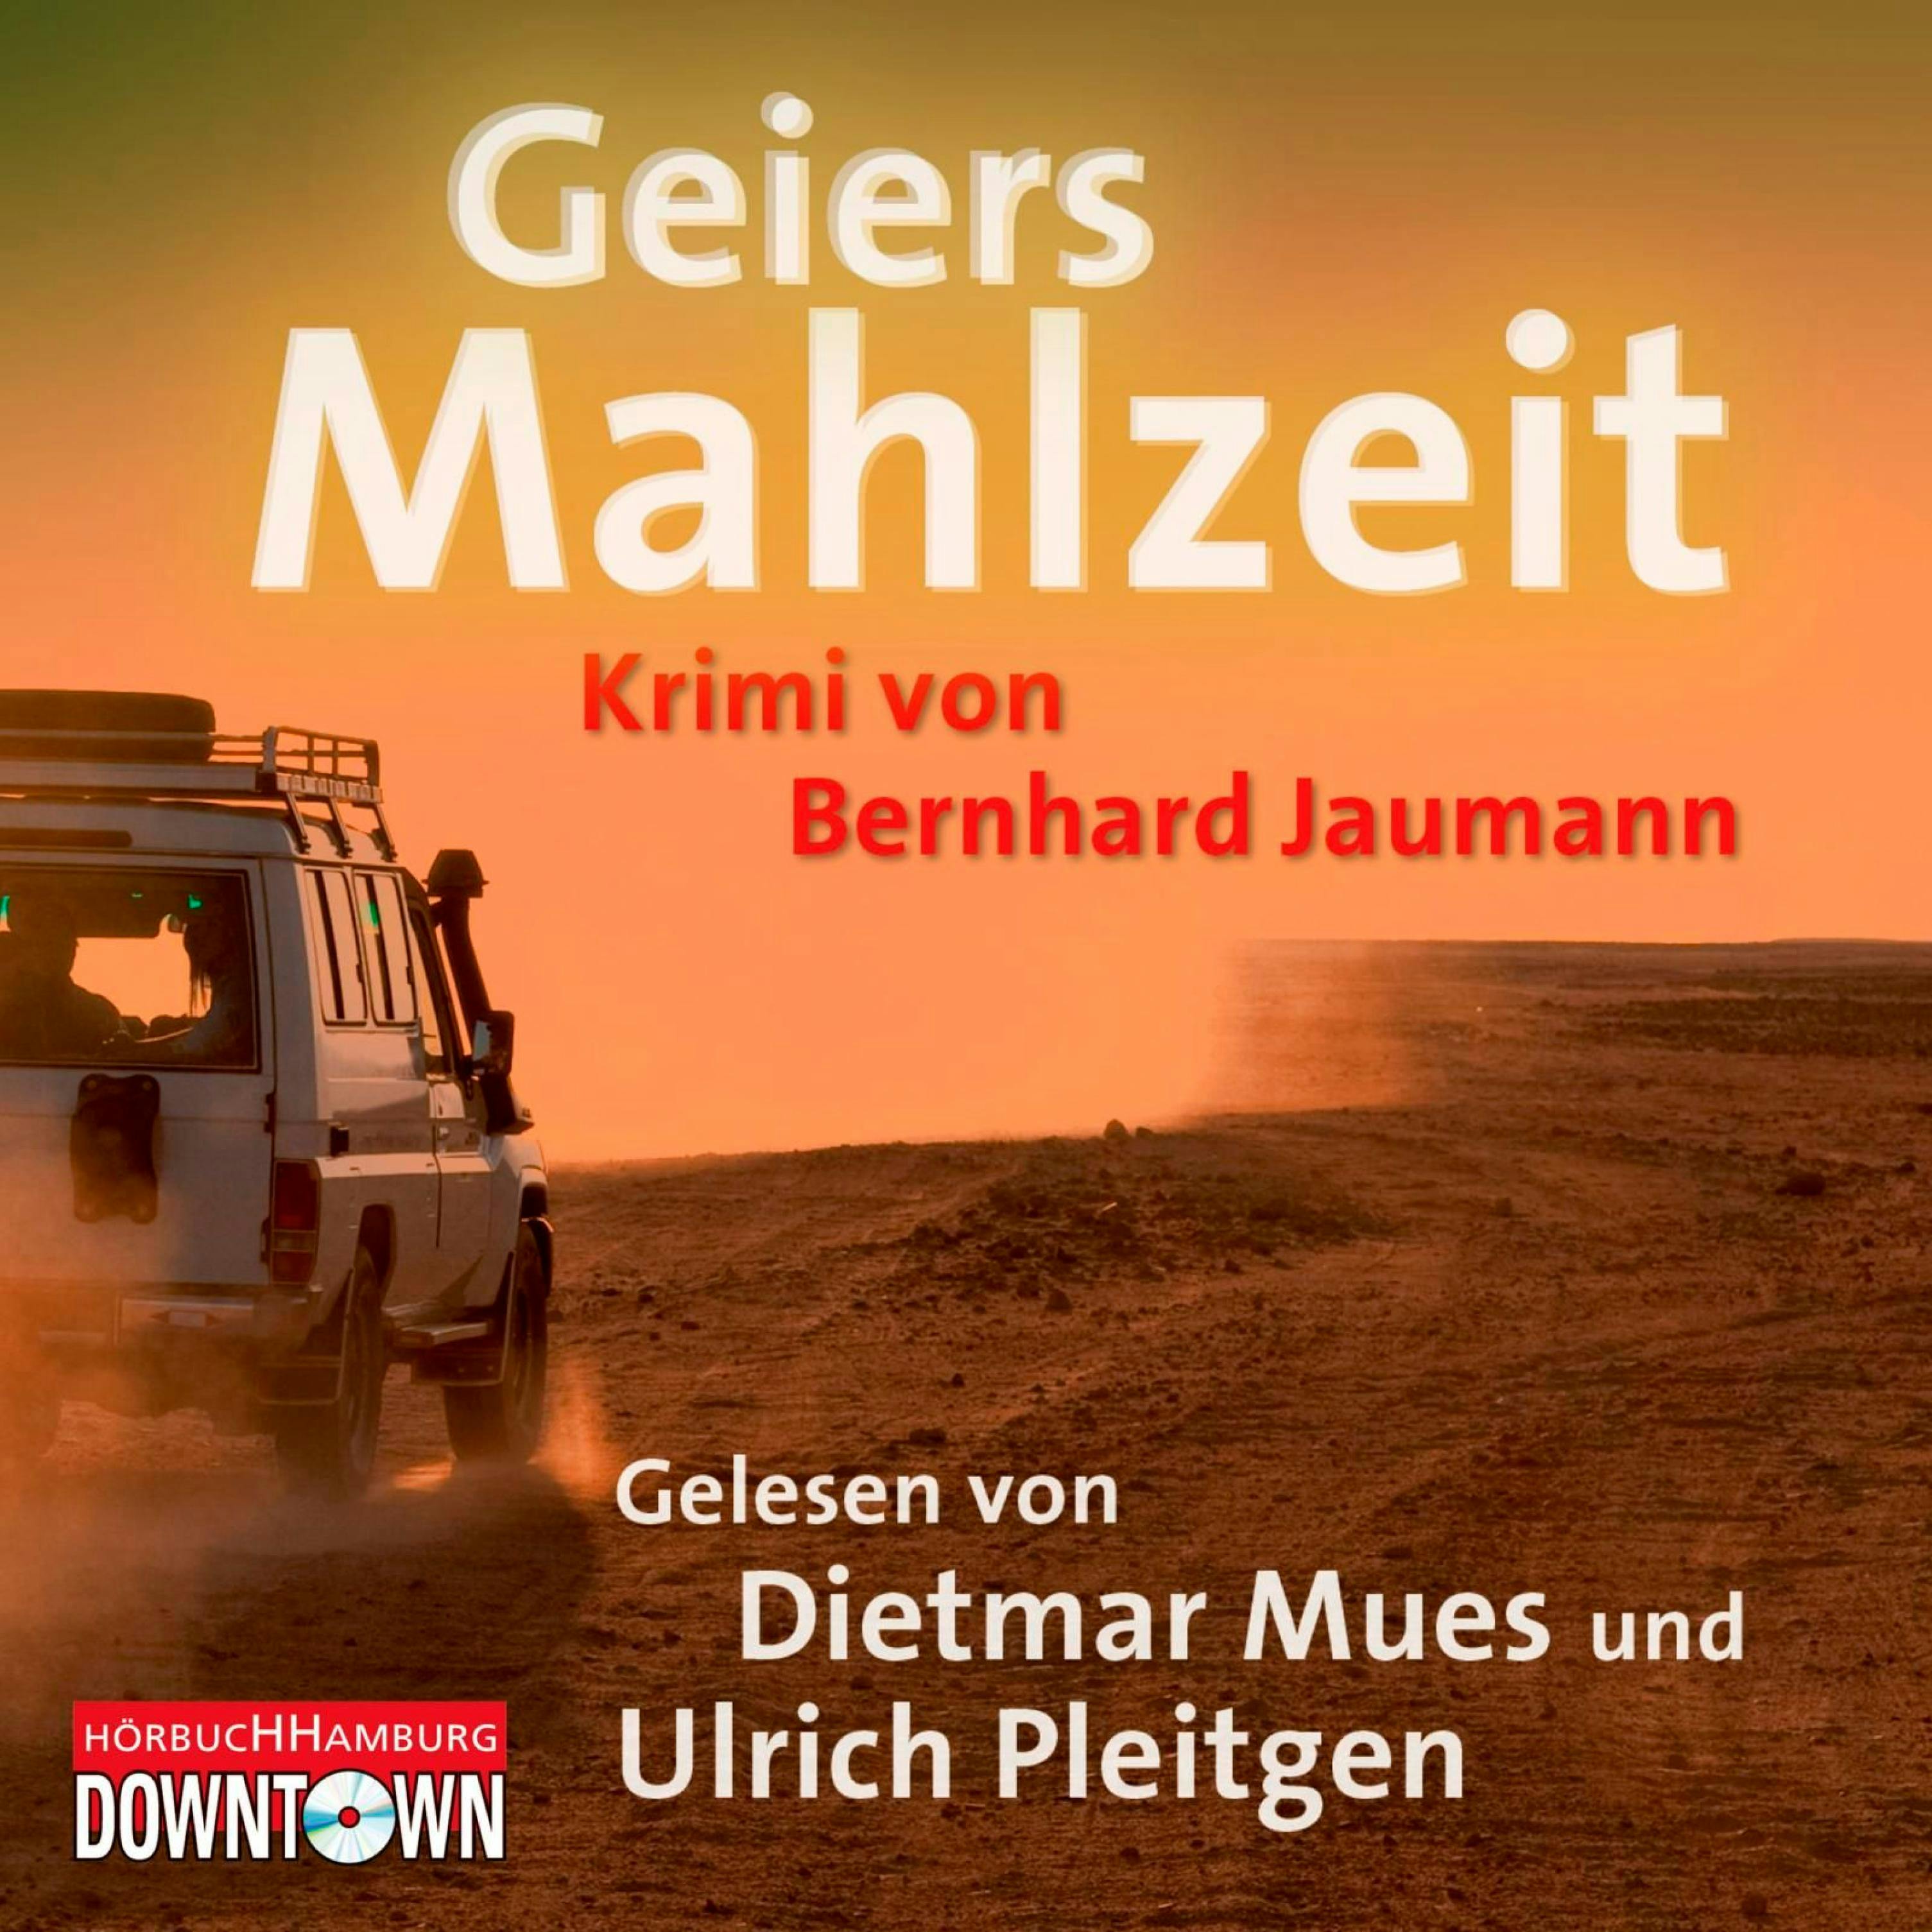 Geiers Mahlzeit - Bernhard Jaumann